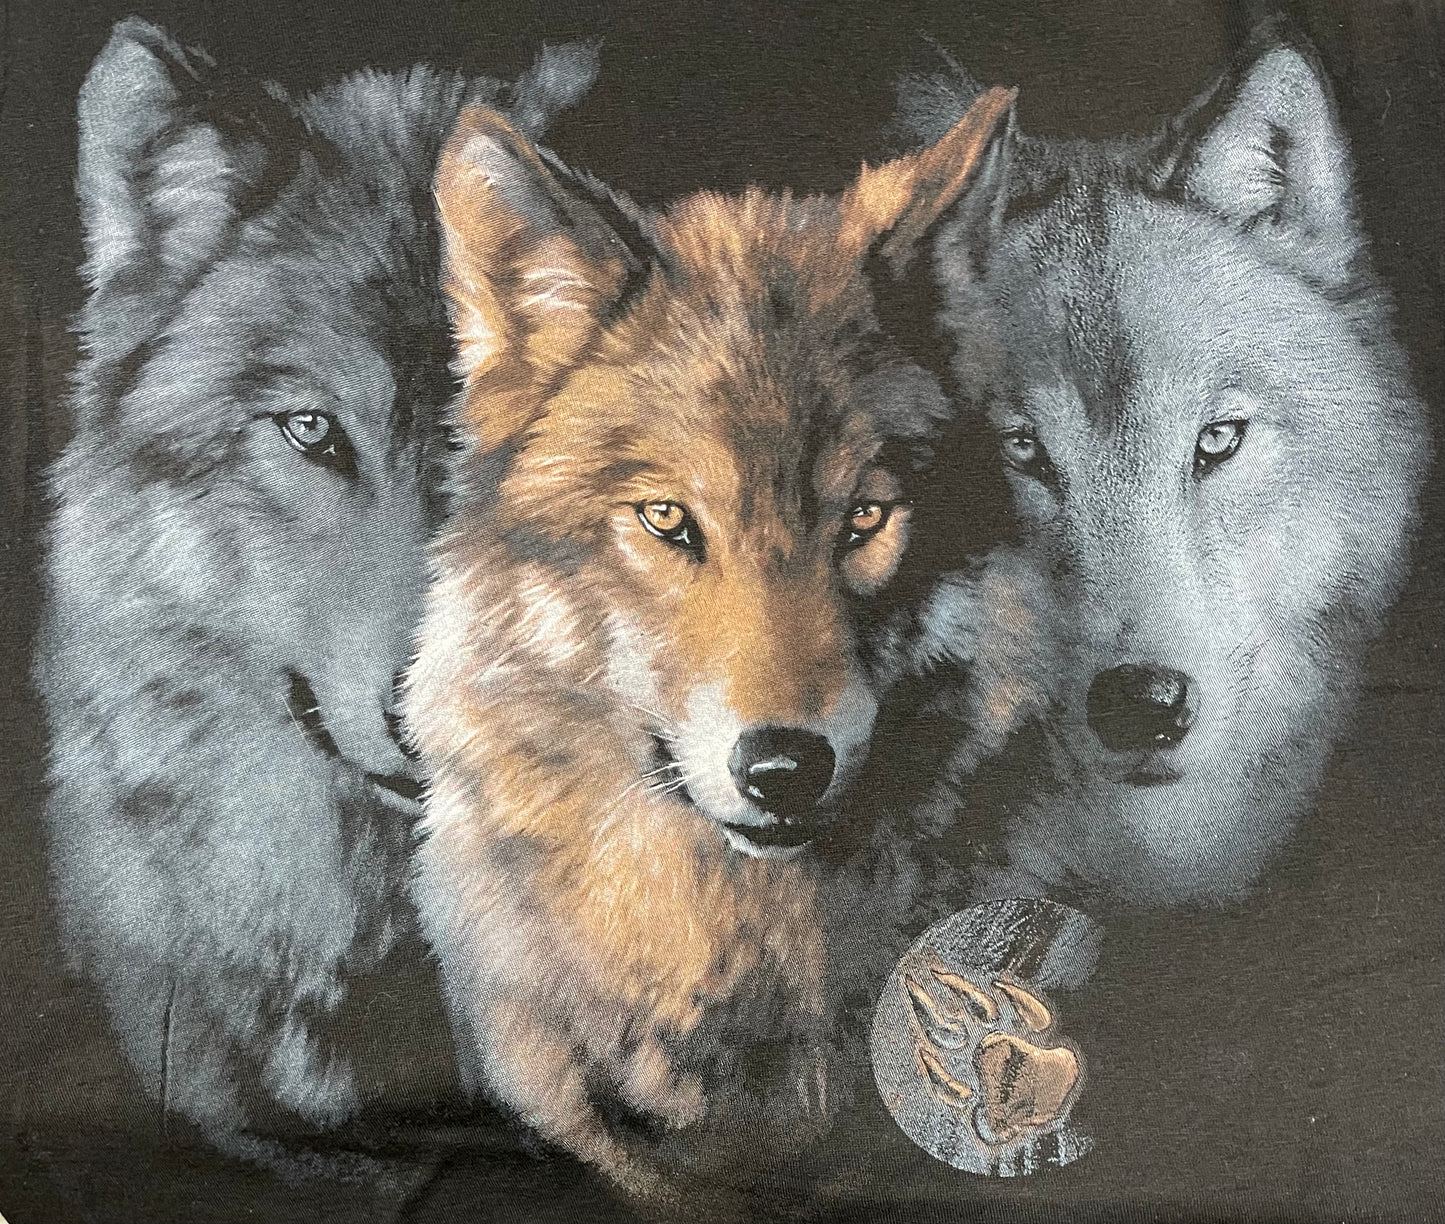 Souvenir Clothing - Adult T-Shirt - Wolves Trilogy - Black